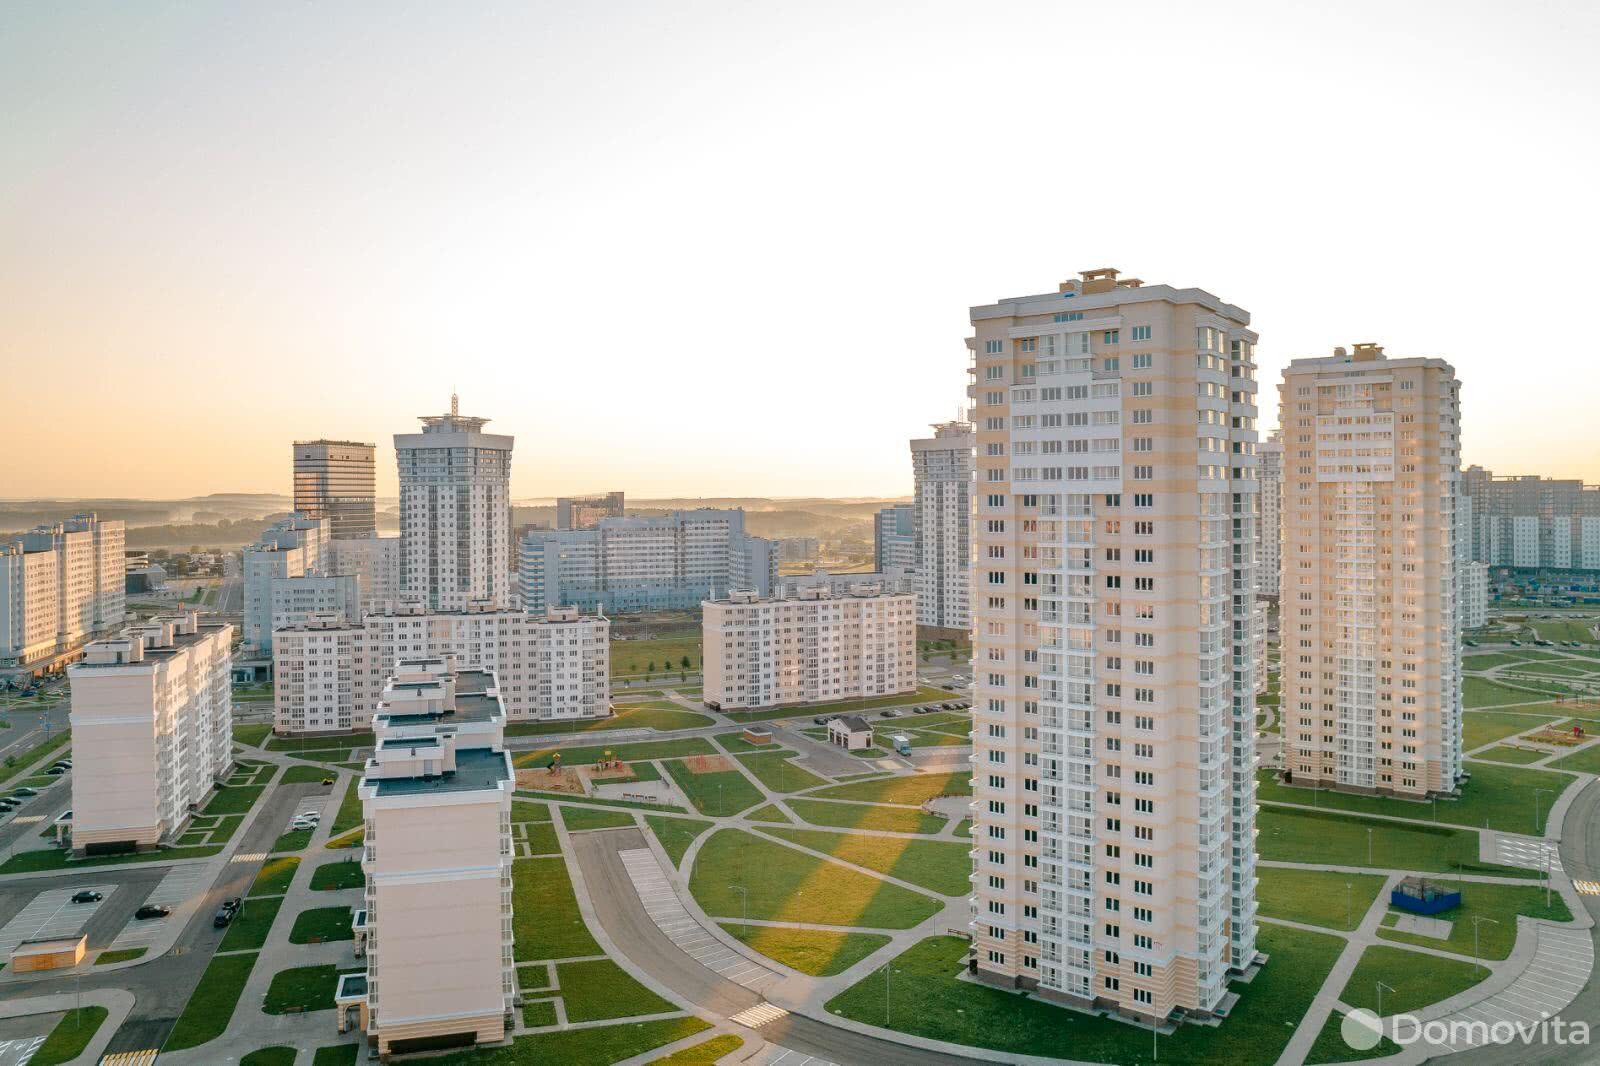 Квартиры в Минске стали доступнее с компанией с порталом Domovita